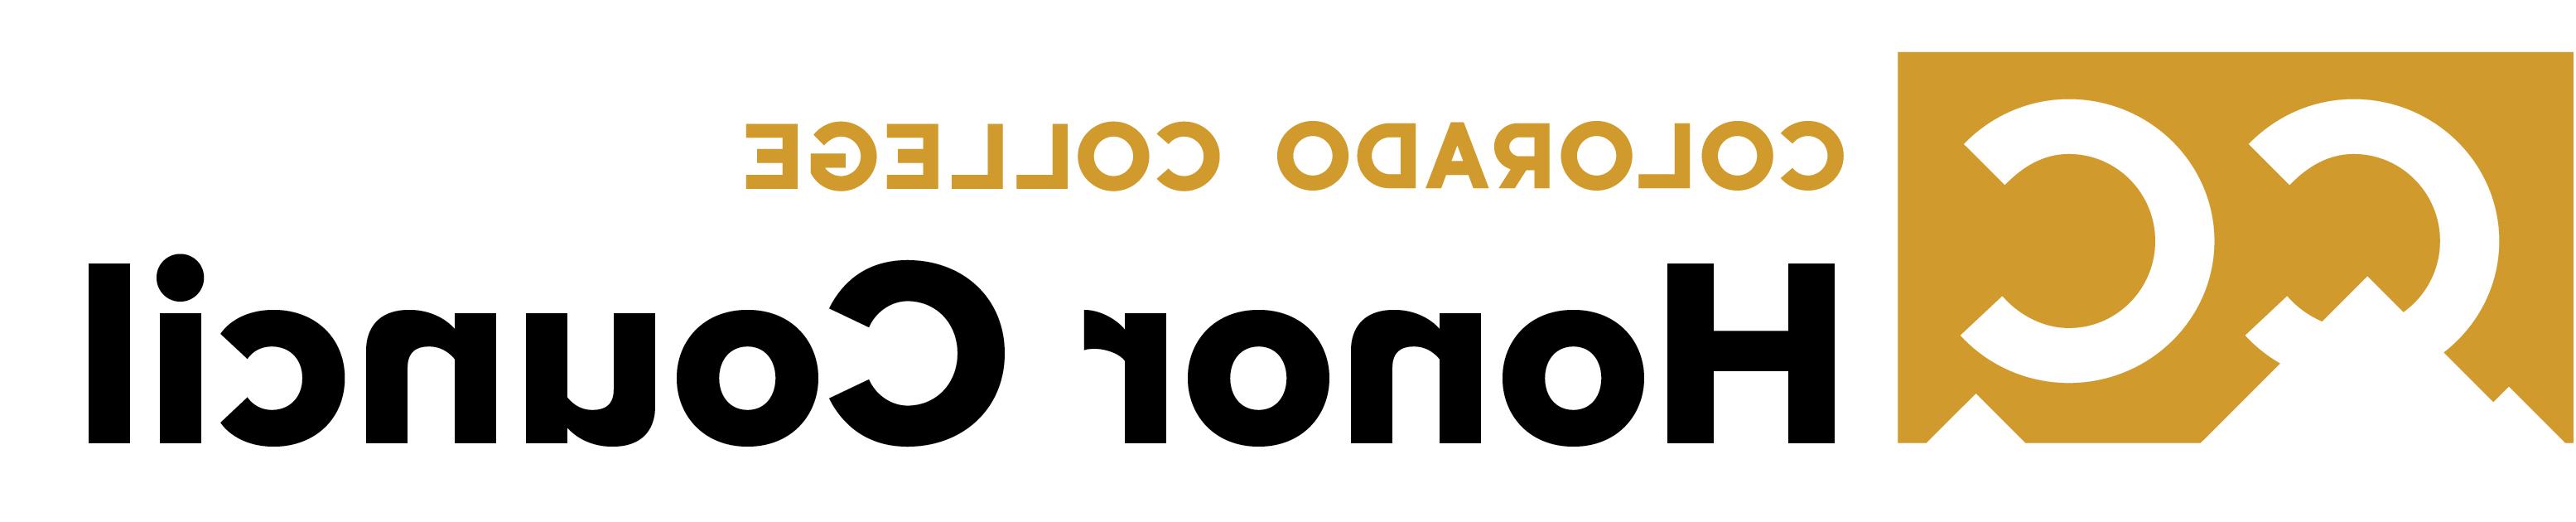 honor council logo